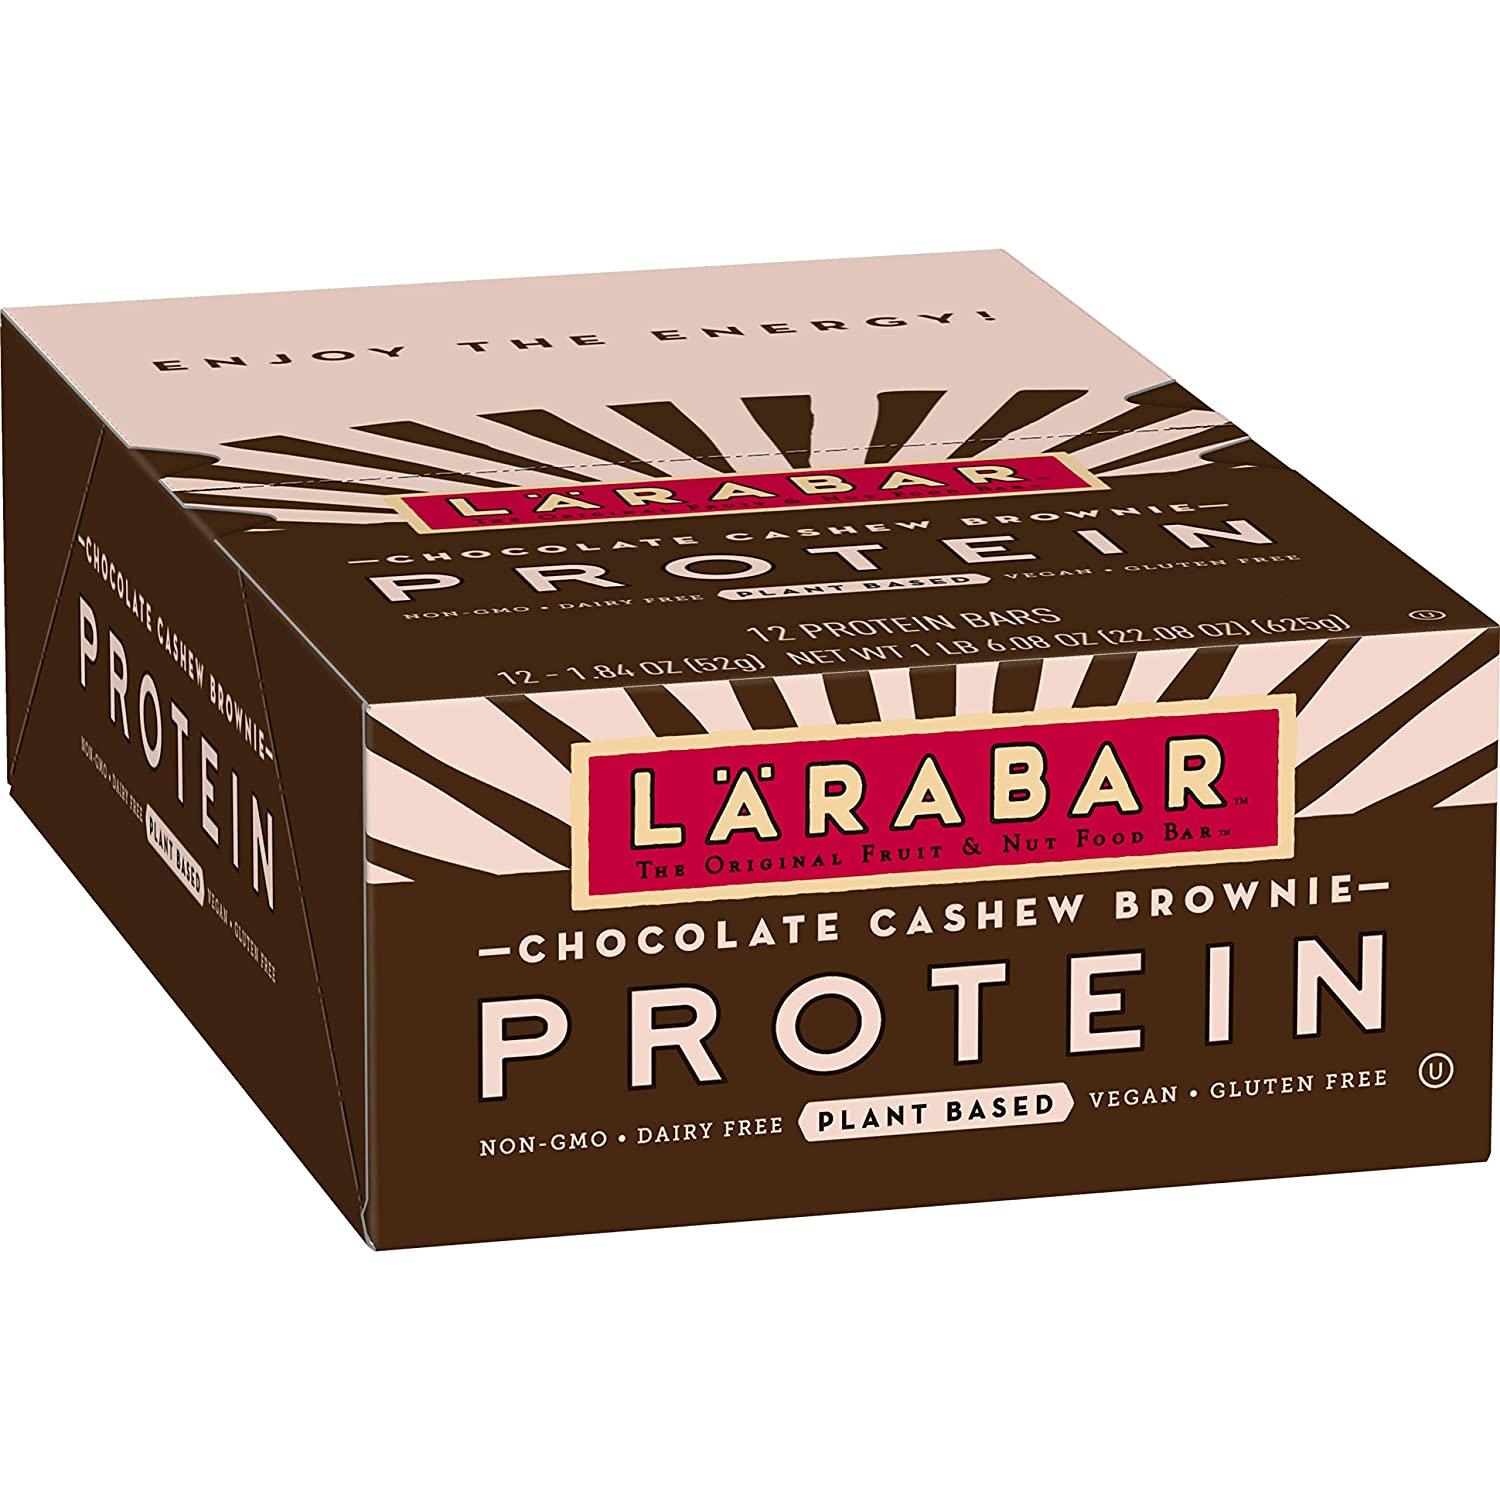 12 Larabar Protein Bars for $12.99 Shipped